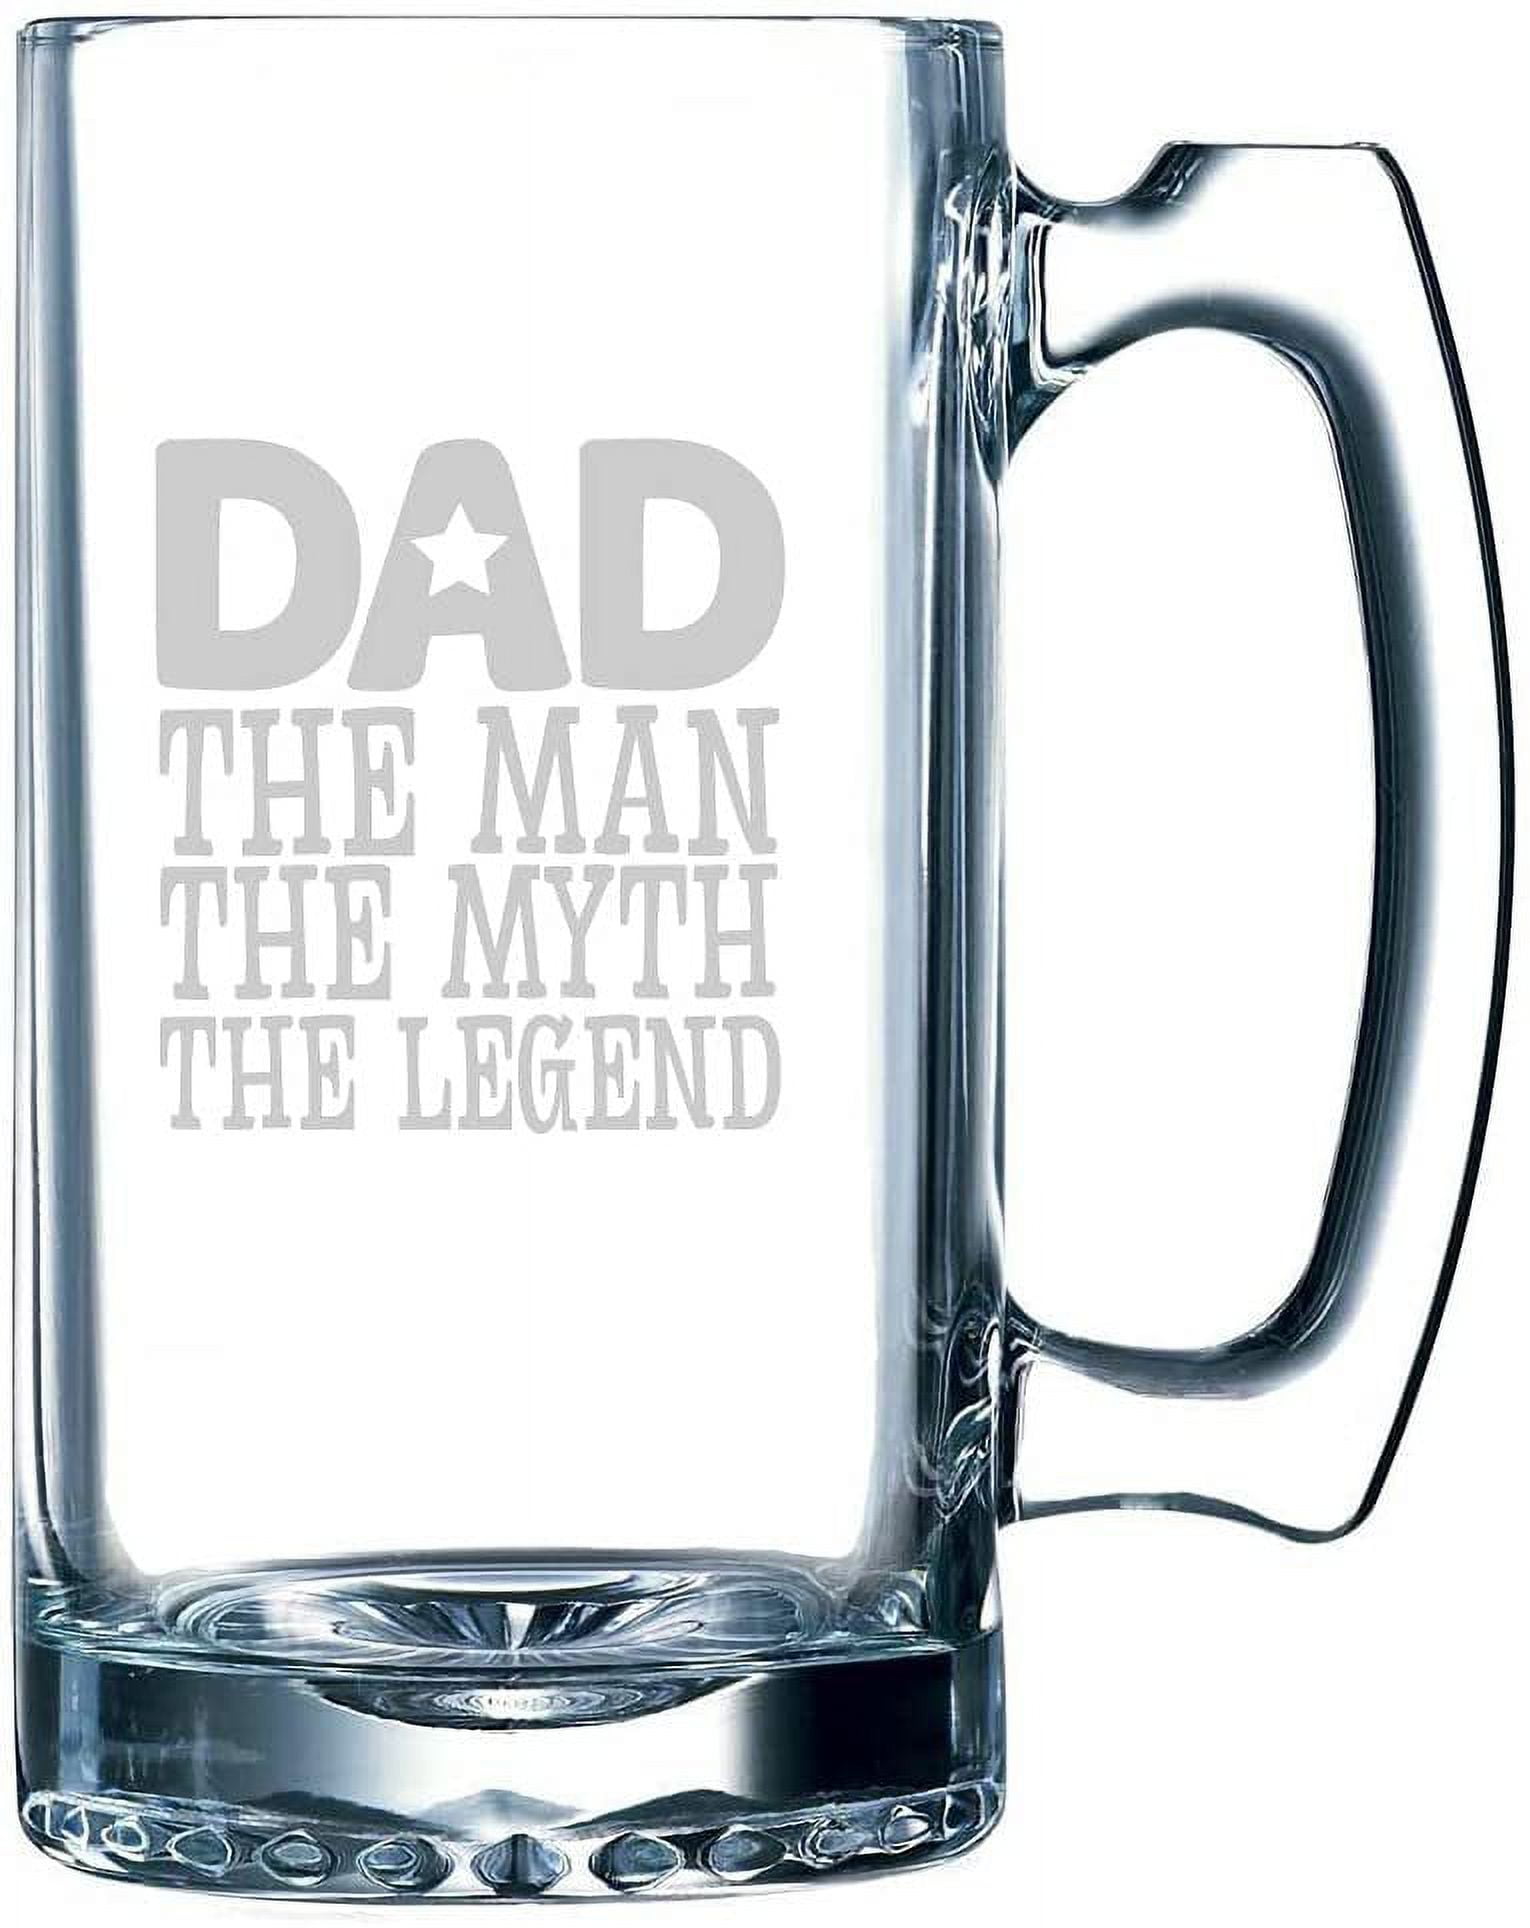 Darth Vader Mug, Star Wars Beer Mug, Groomsmen Beer Mug, Fathers Day Gift,  Gift for Groomsmen, Beer Glass, Gift for Him, Beer Glasses K167 